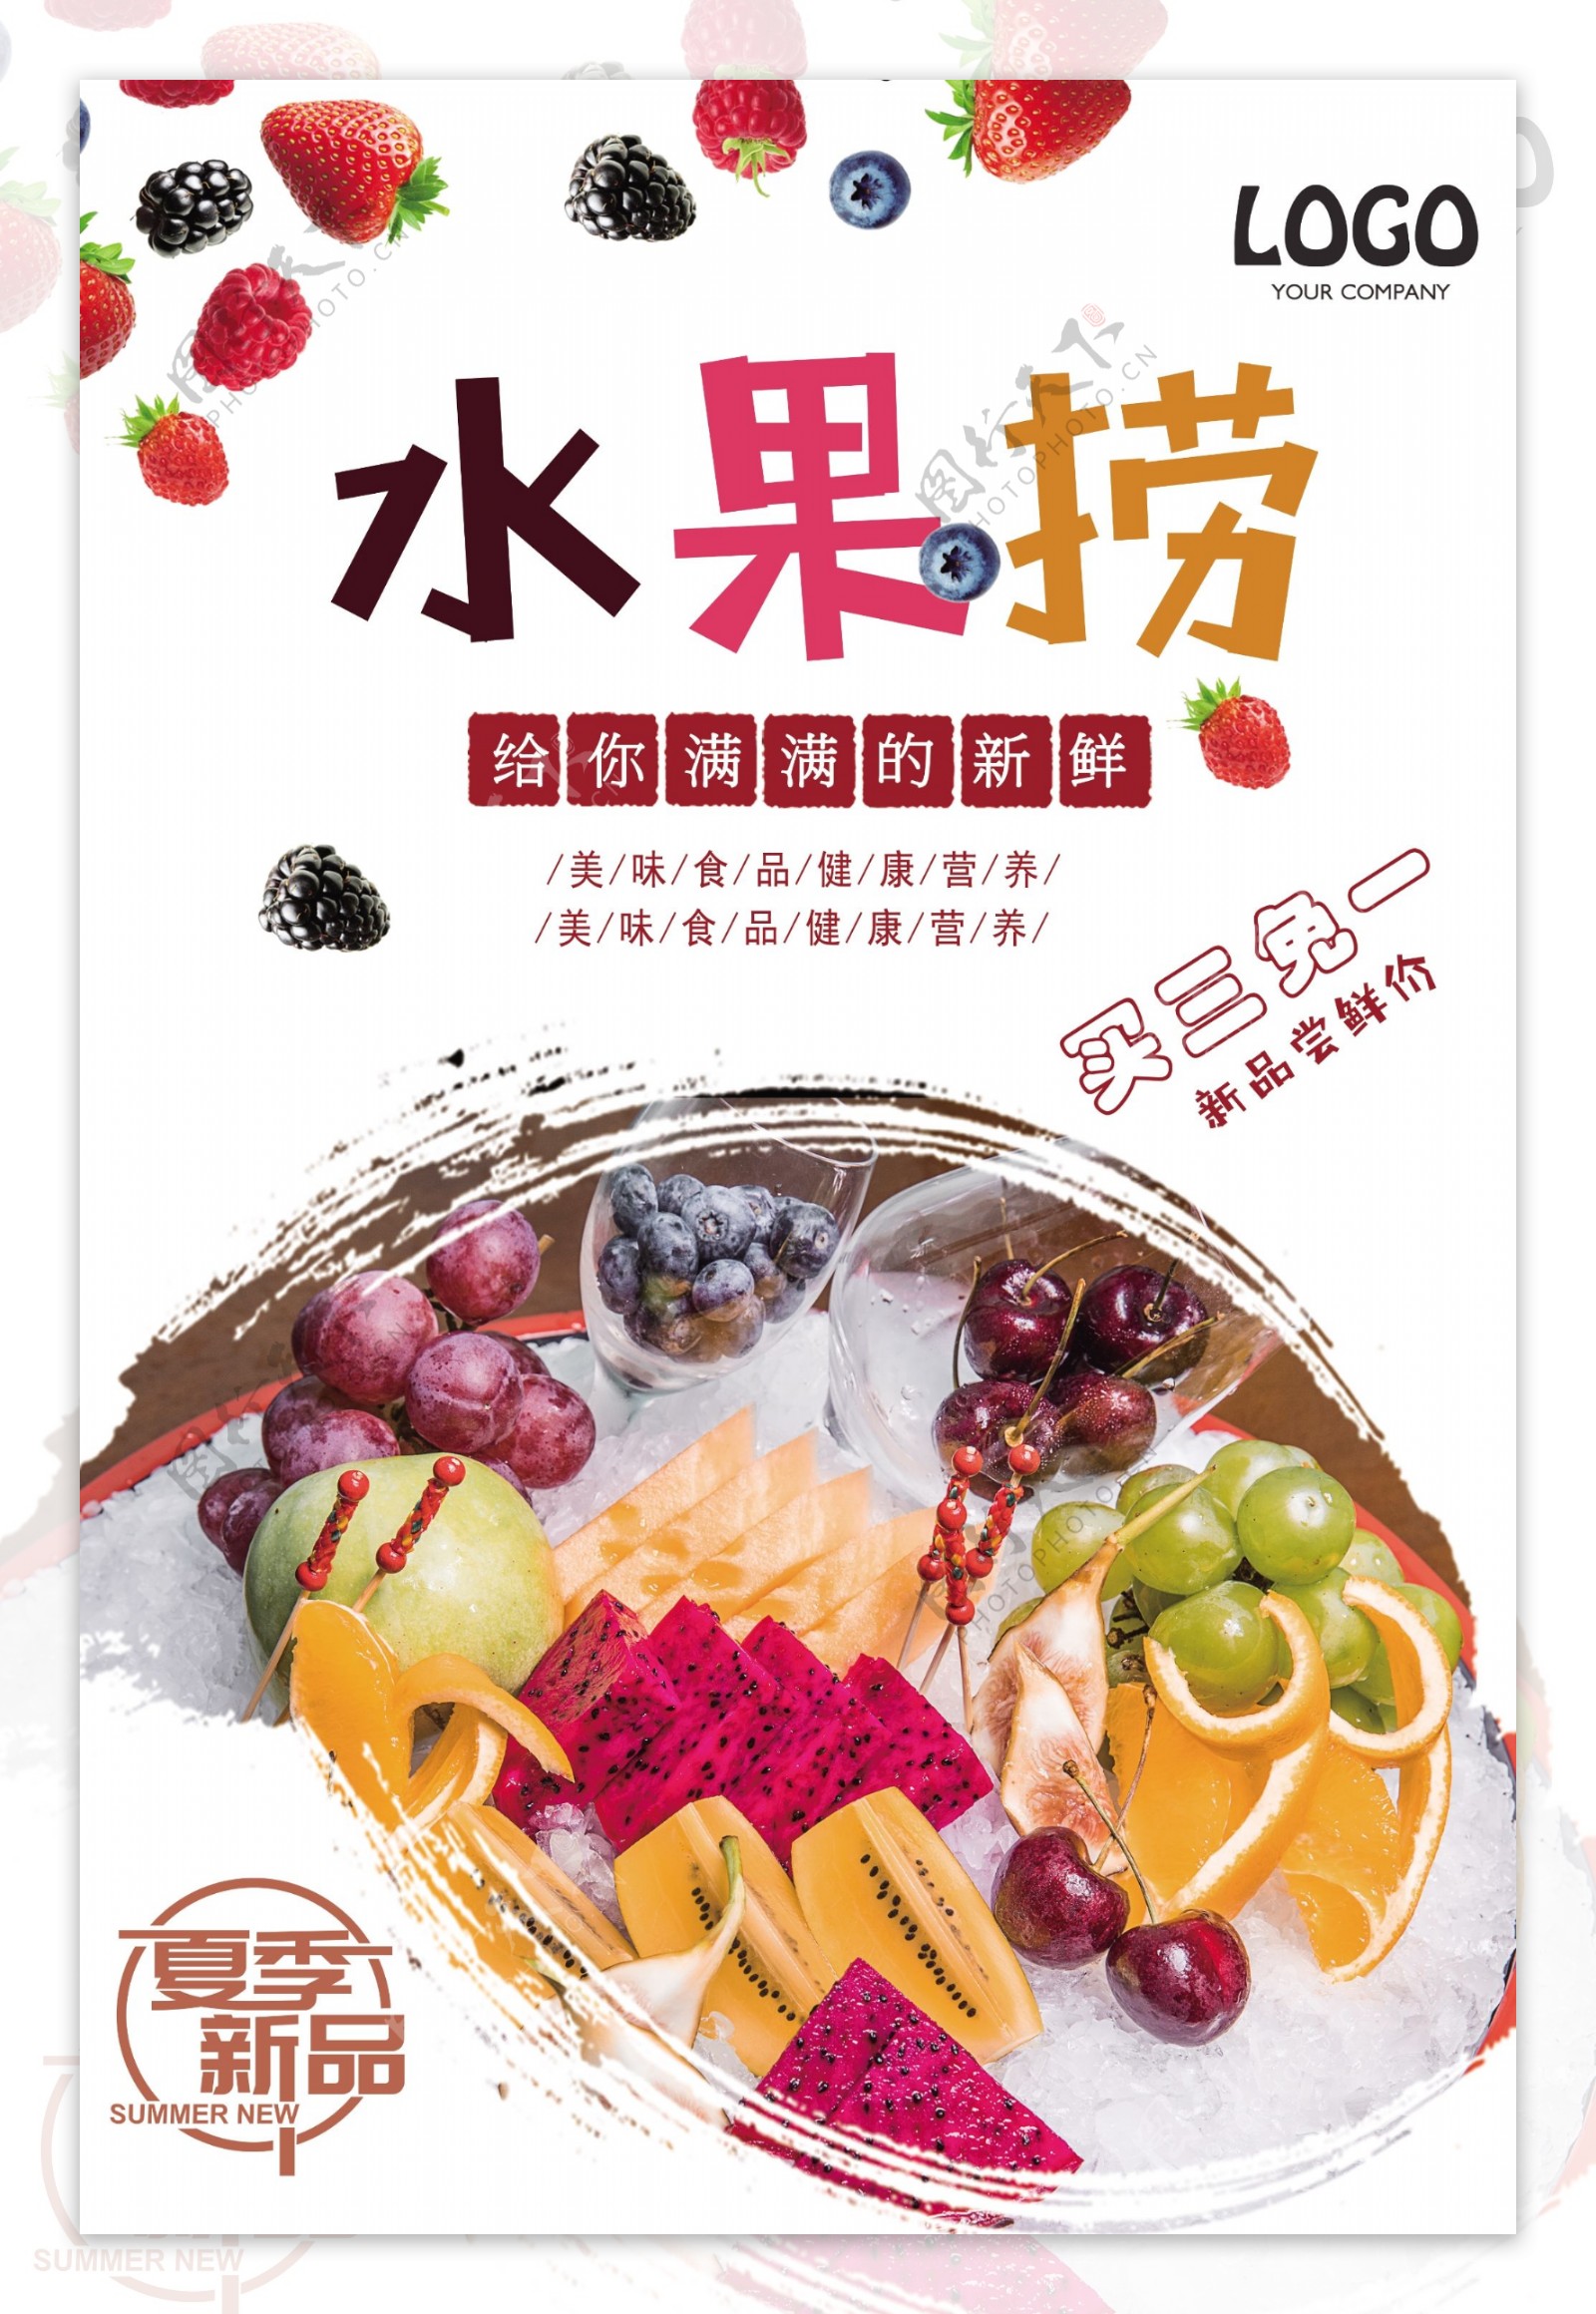 创意新鲜水果捞新品尝鲜宣传海报